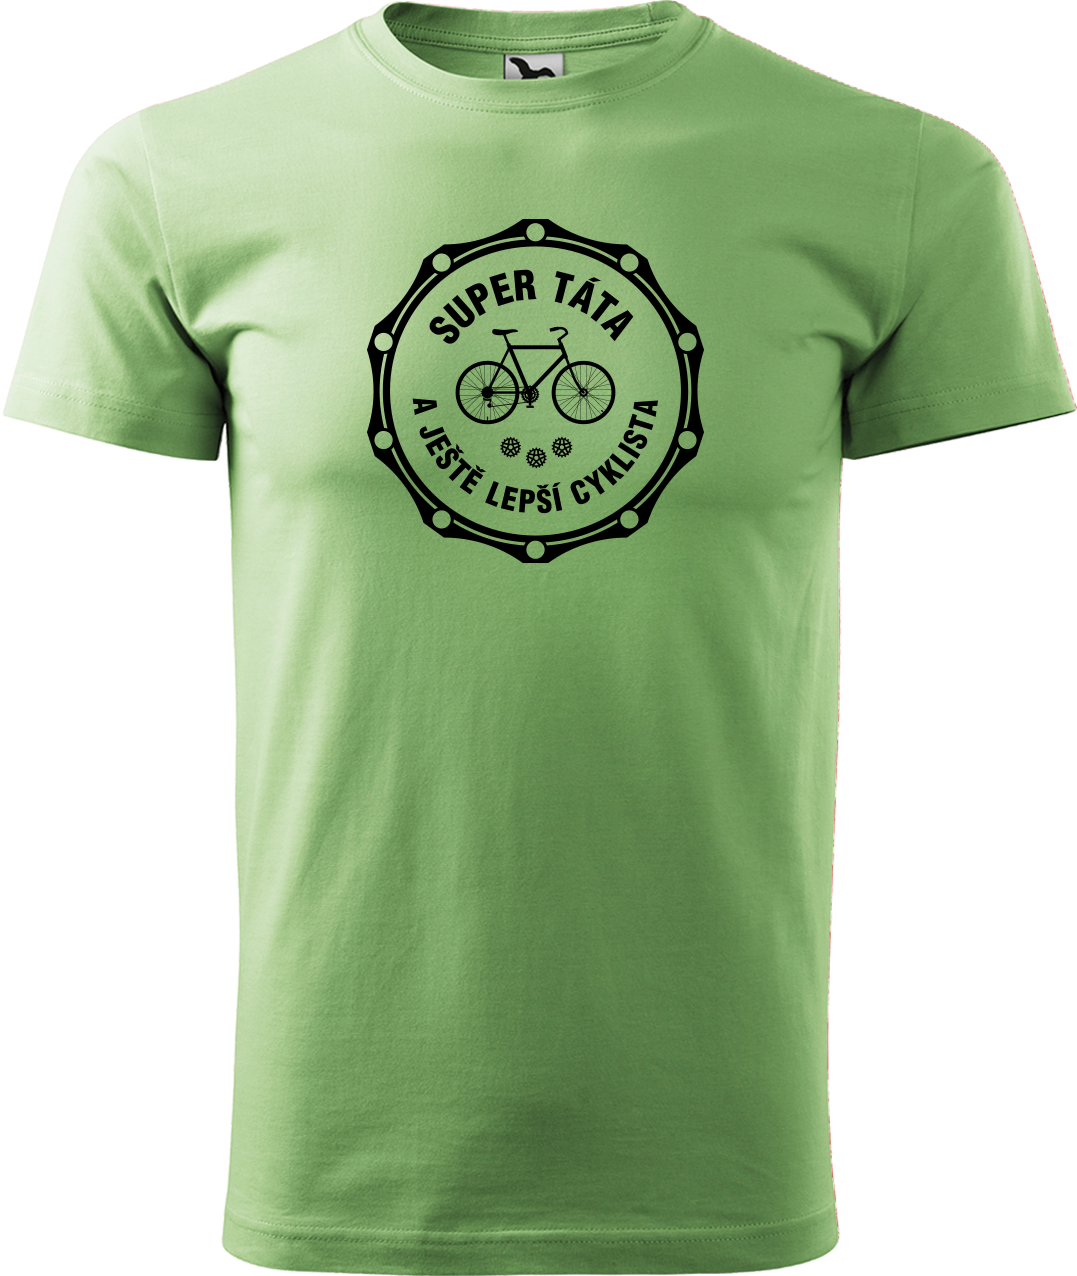 Pánské tričko pro cyklistu - Super táta a ještě lepší cyklista Velikost: 2XL, Barva: Trávově zelená (39)